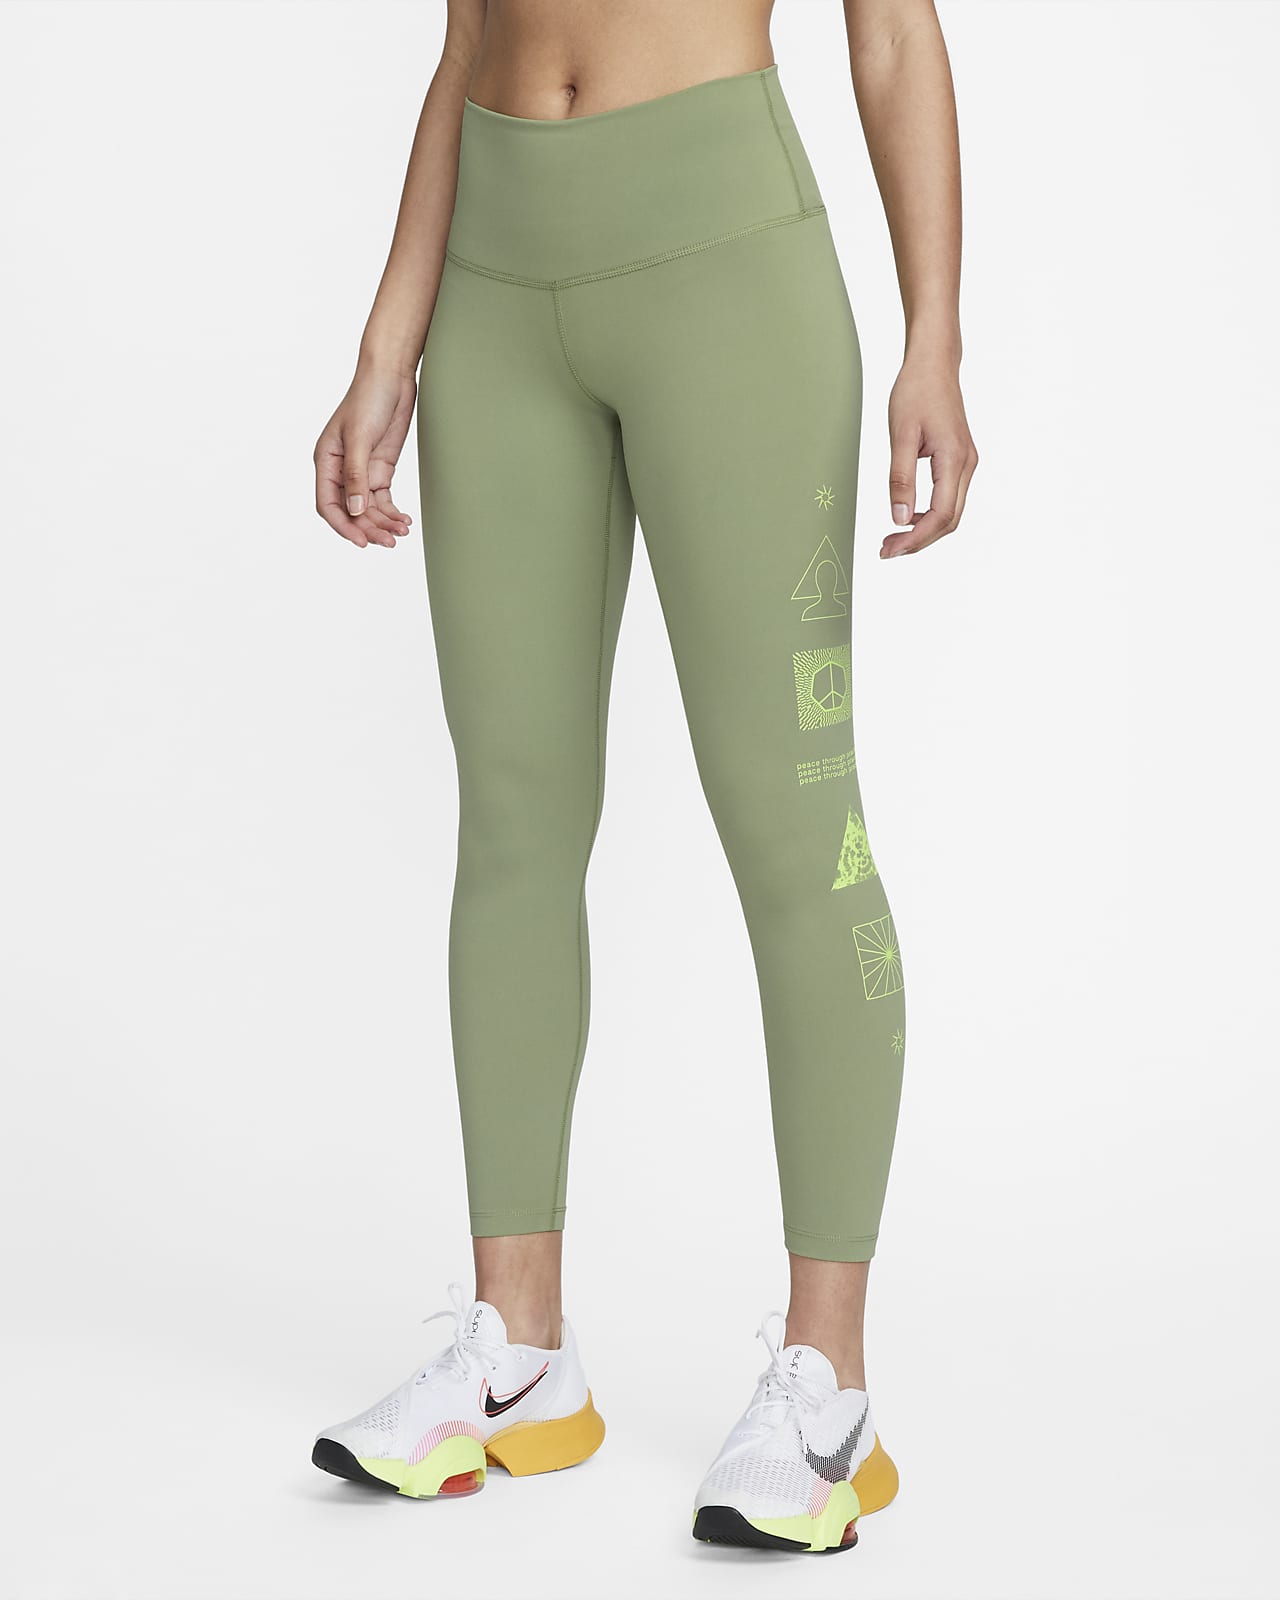 Legging 7/8 taille haute à motif Nike Yoga Dri-FIT pour Femme